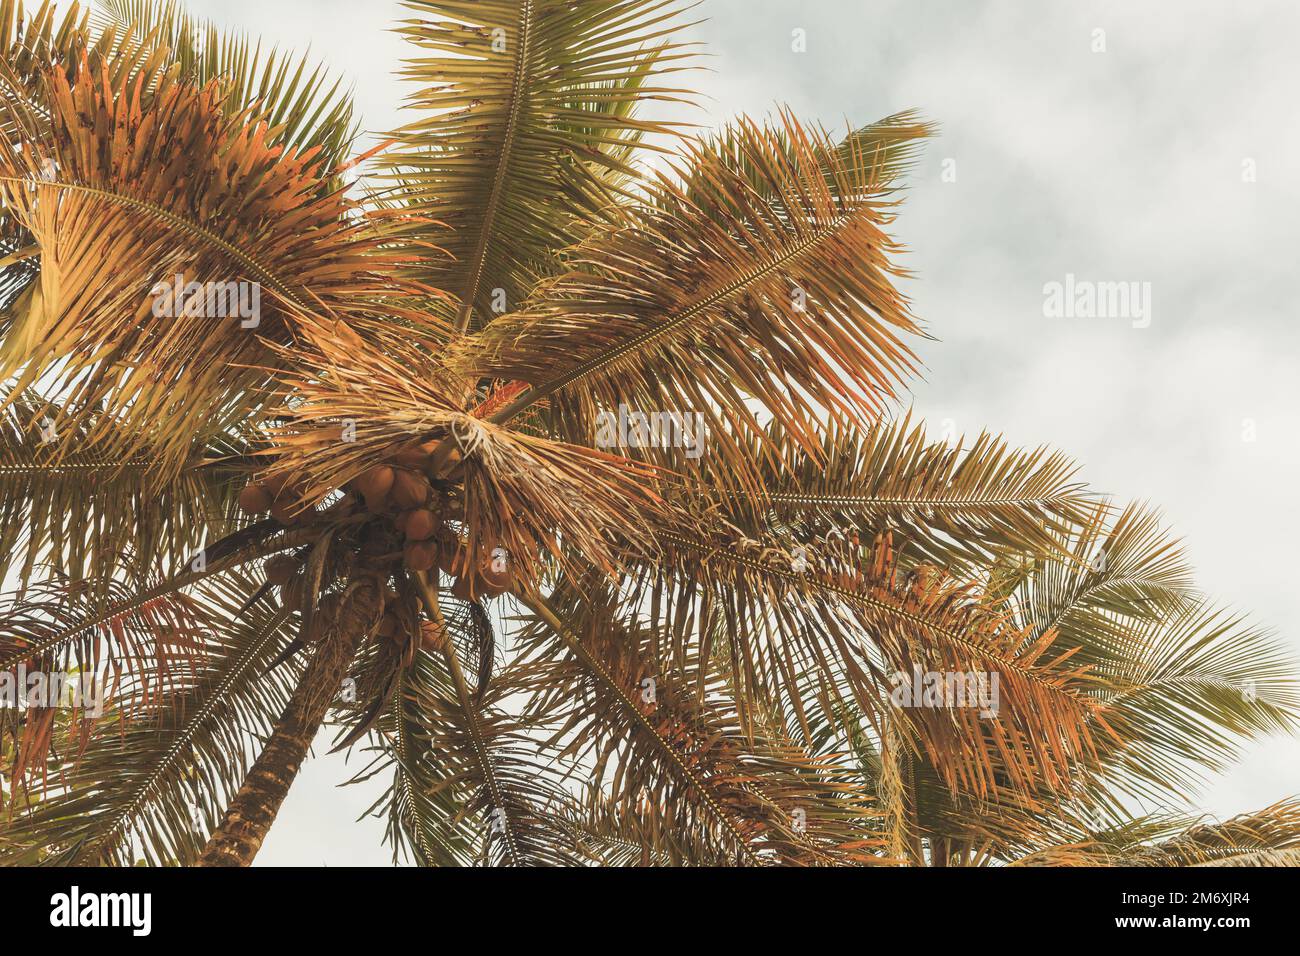 Kokospalmen liegen unter hellem Himmel. Tropisches Hintergrundbild mit Filtereffekt für Tonwertkorrektur Stockfoto